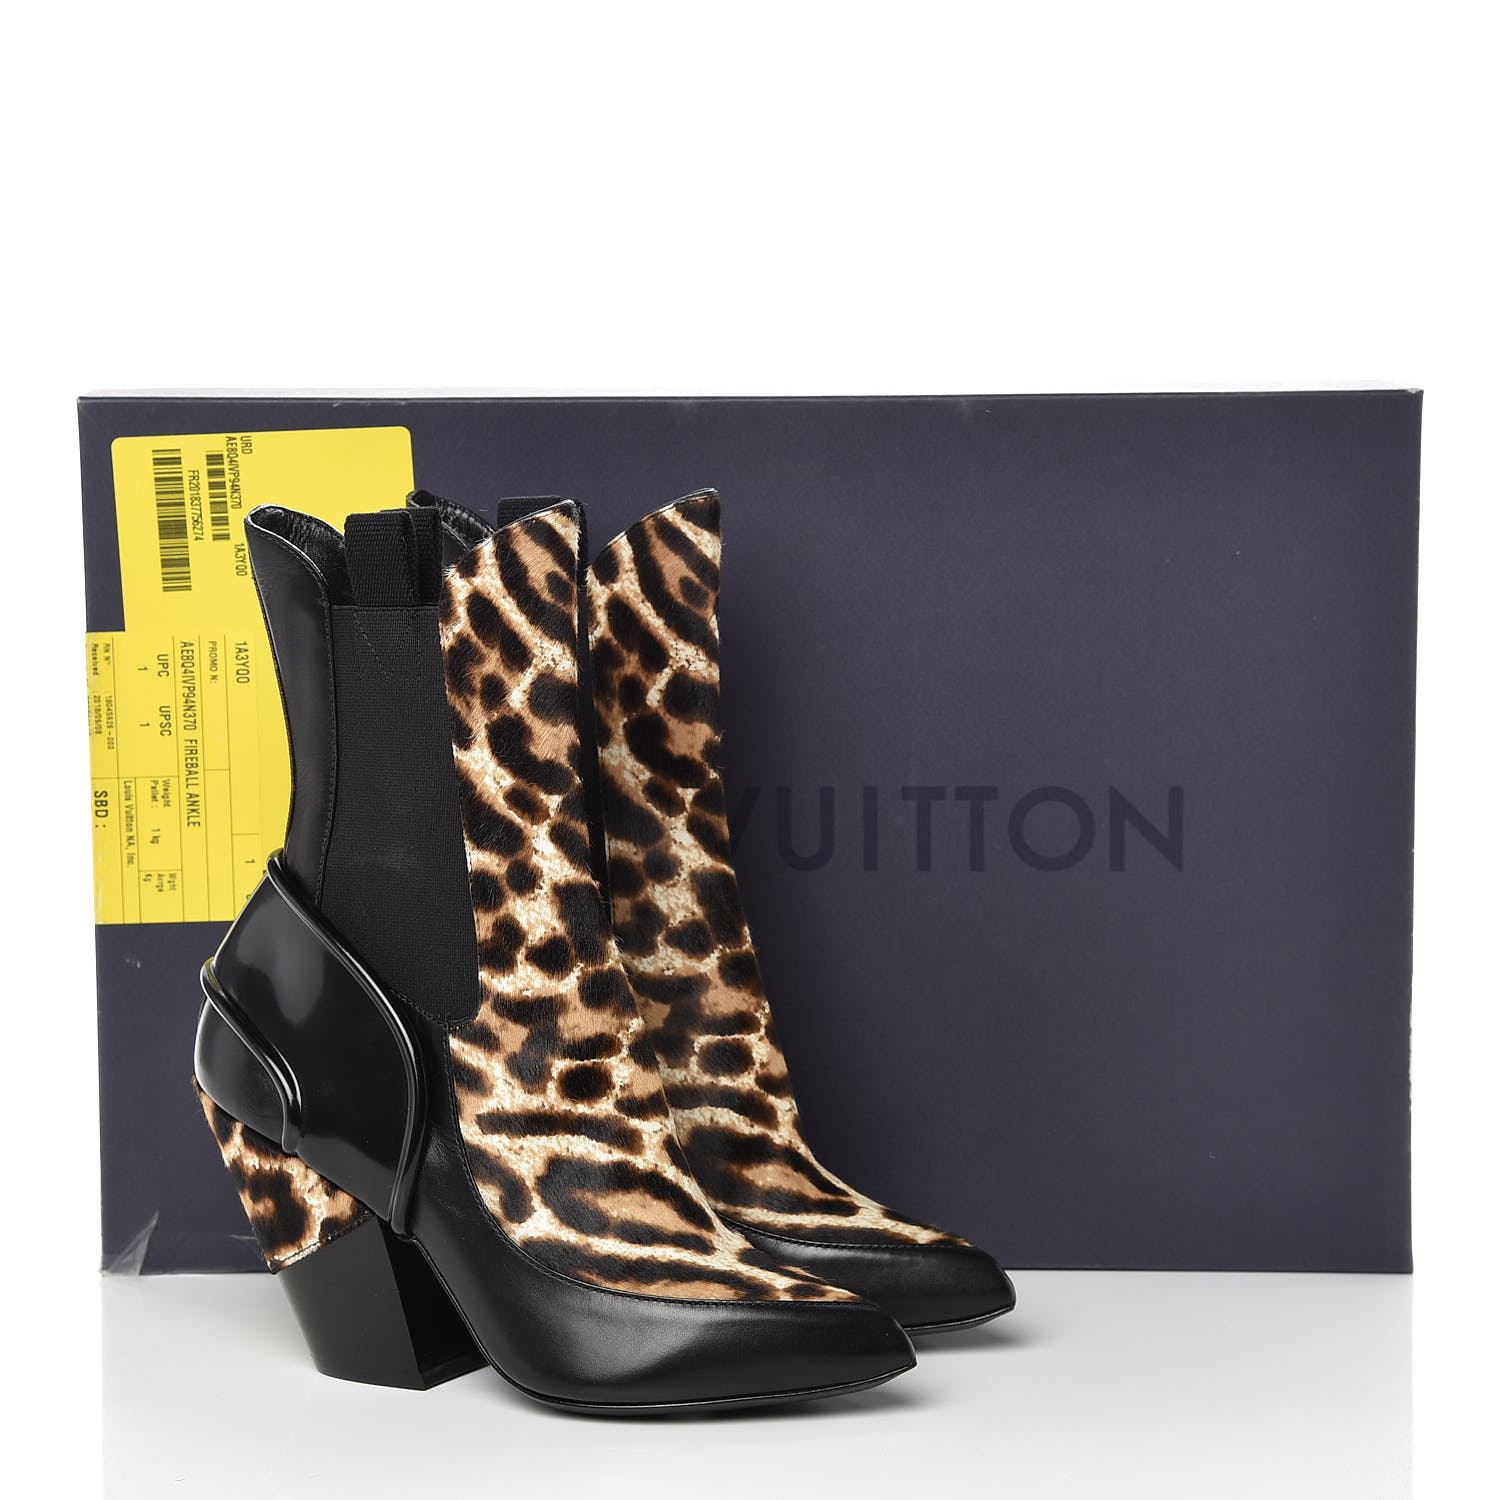 LOUIS VUITTON Calfskin Patent Pony Hair Fireball Ankle Boots 37 Leopard 423898